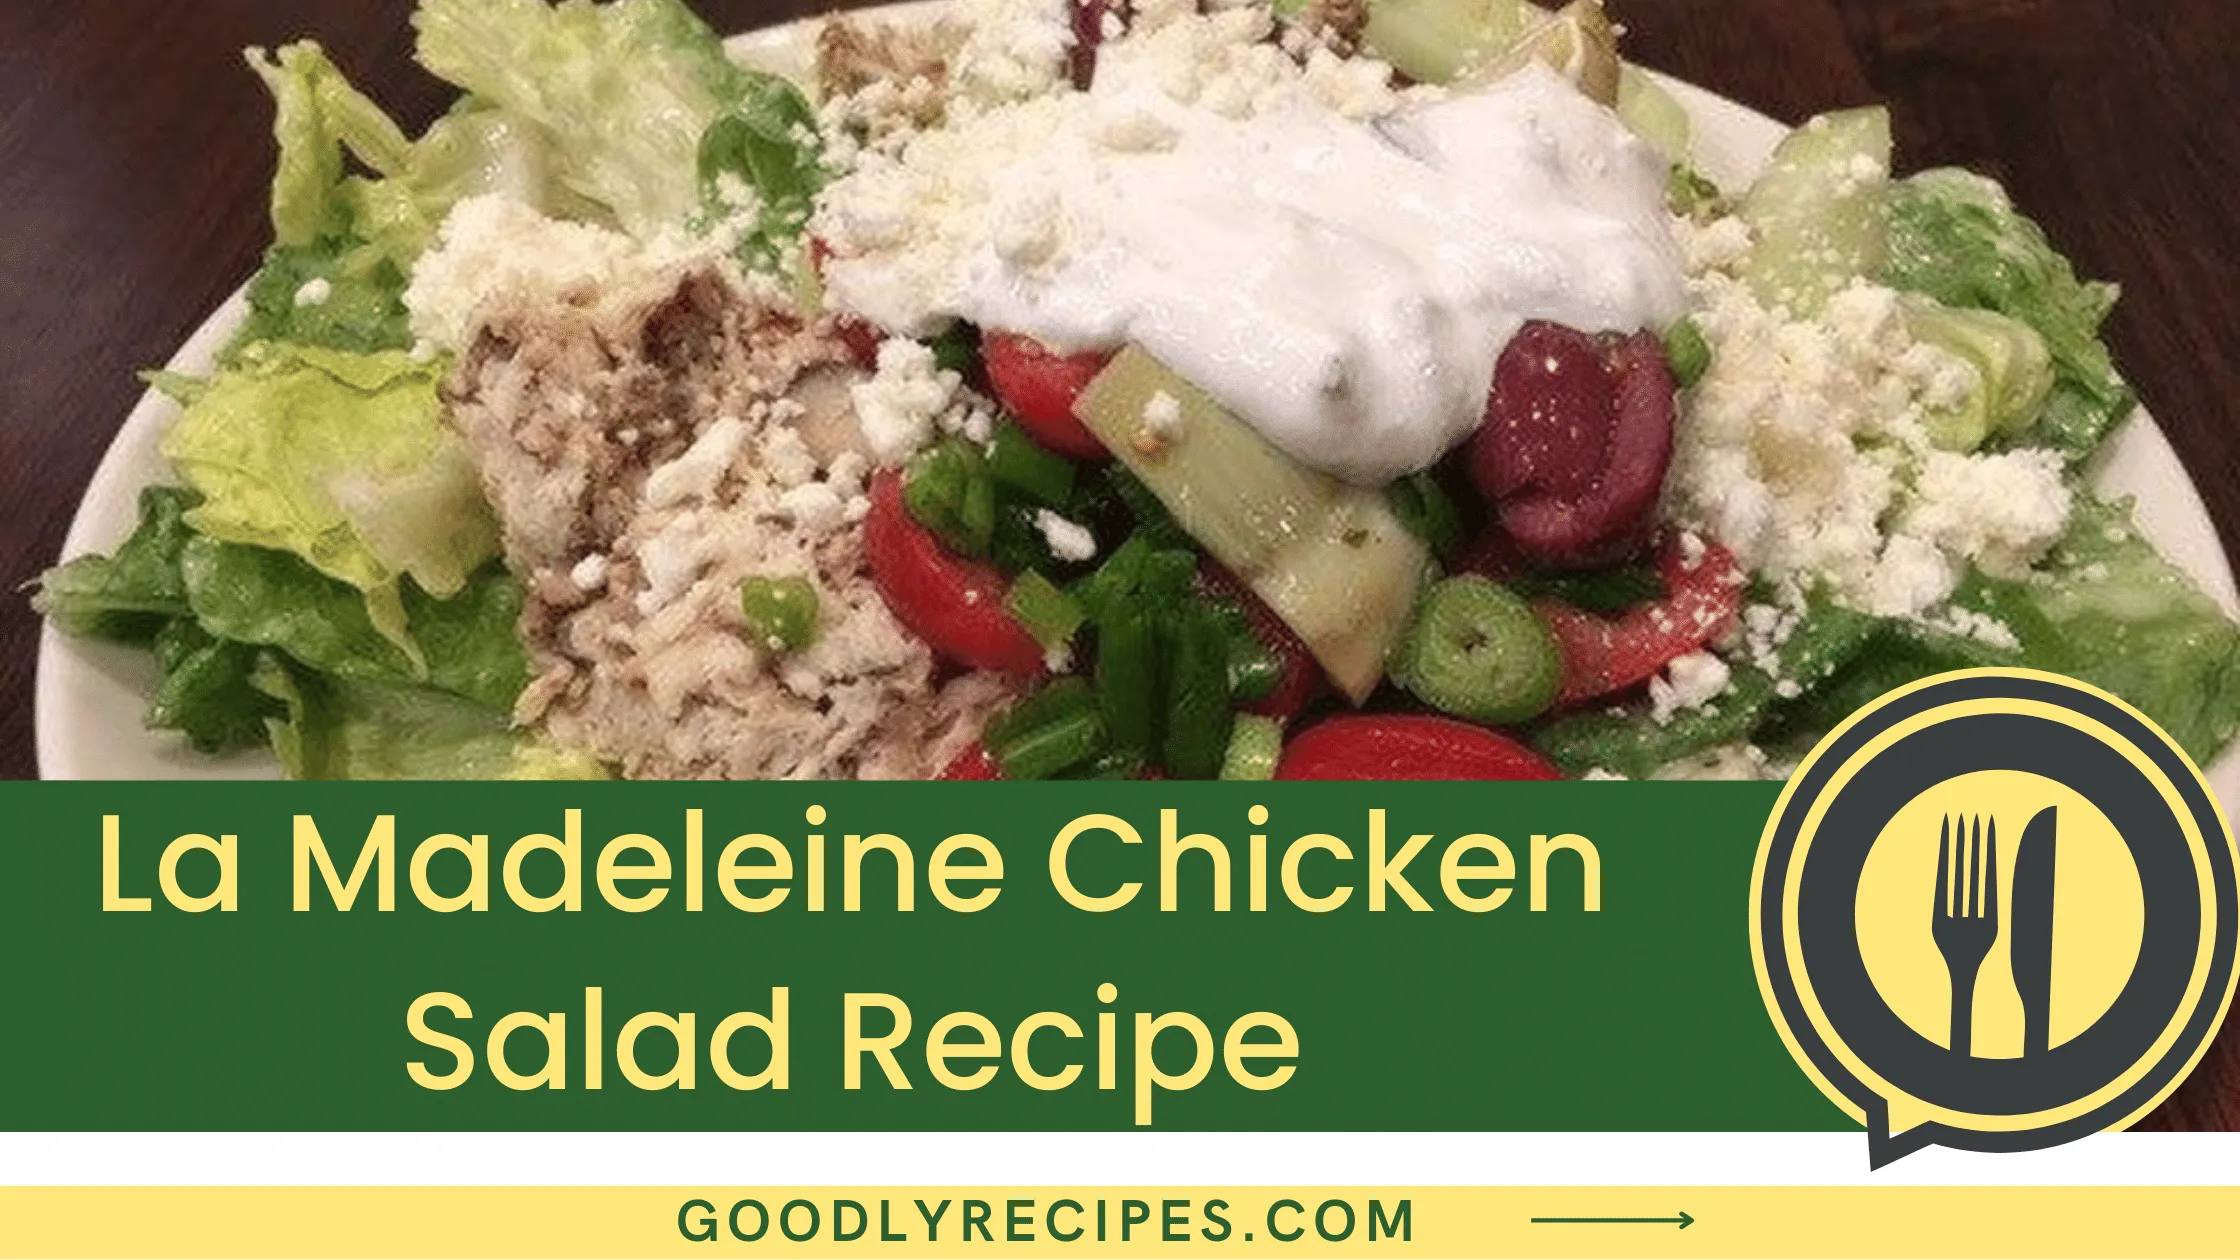 What is La Madeleine Chicken Salad Recipe?